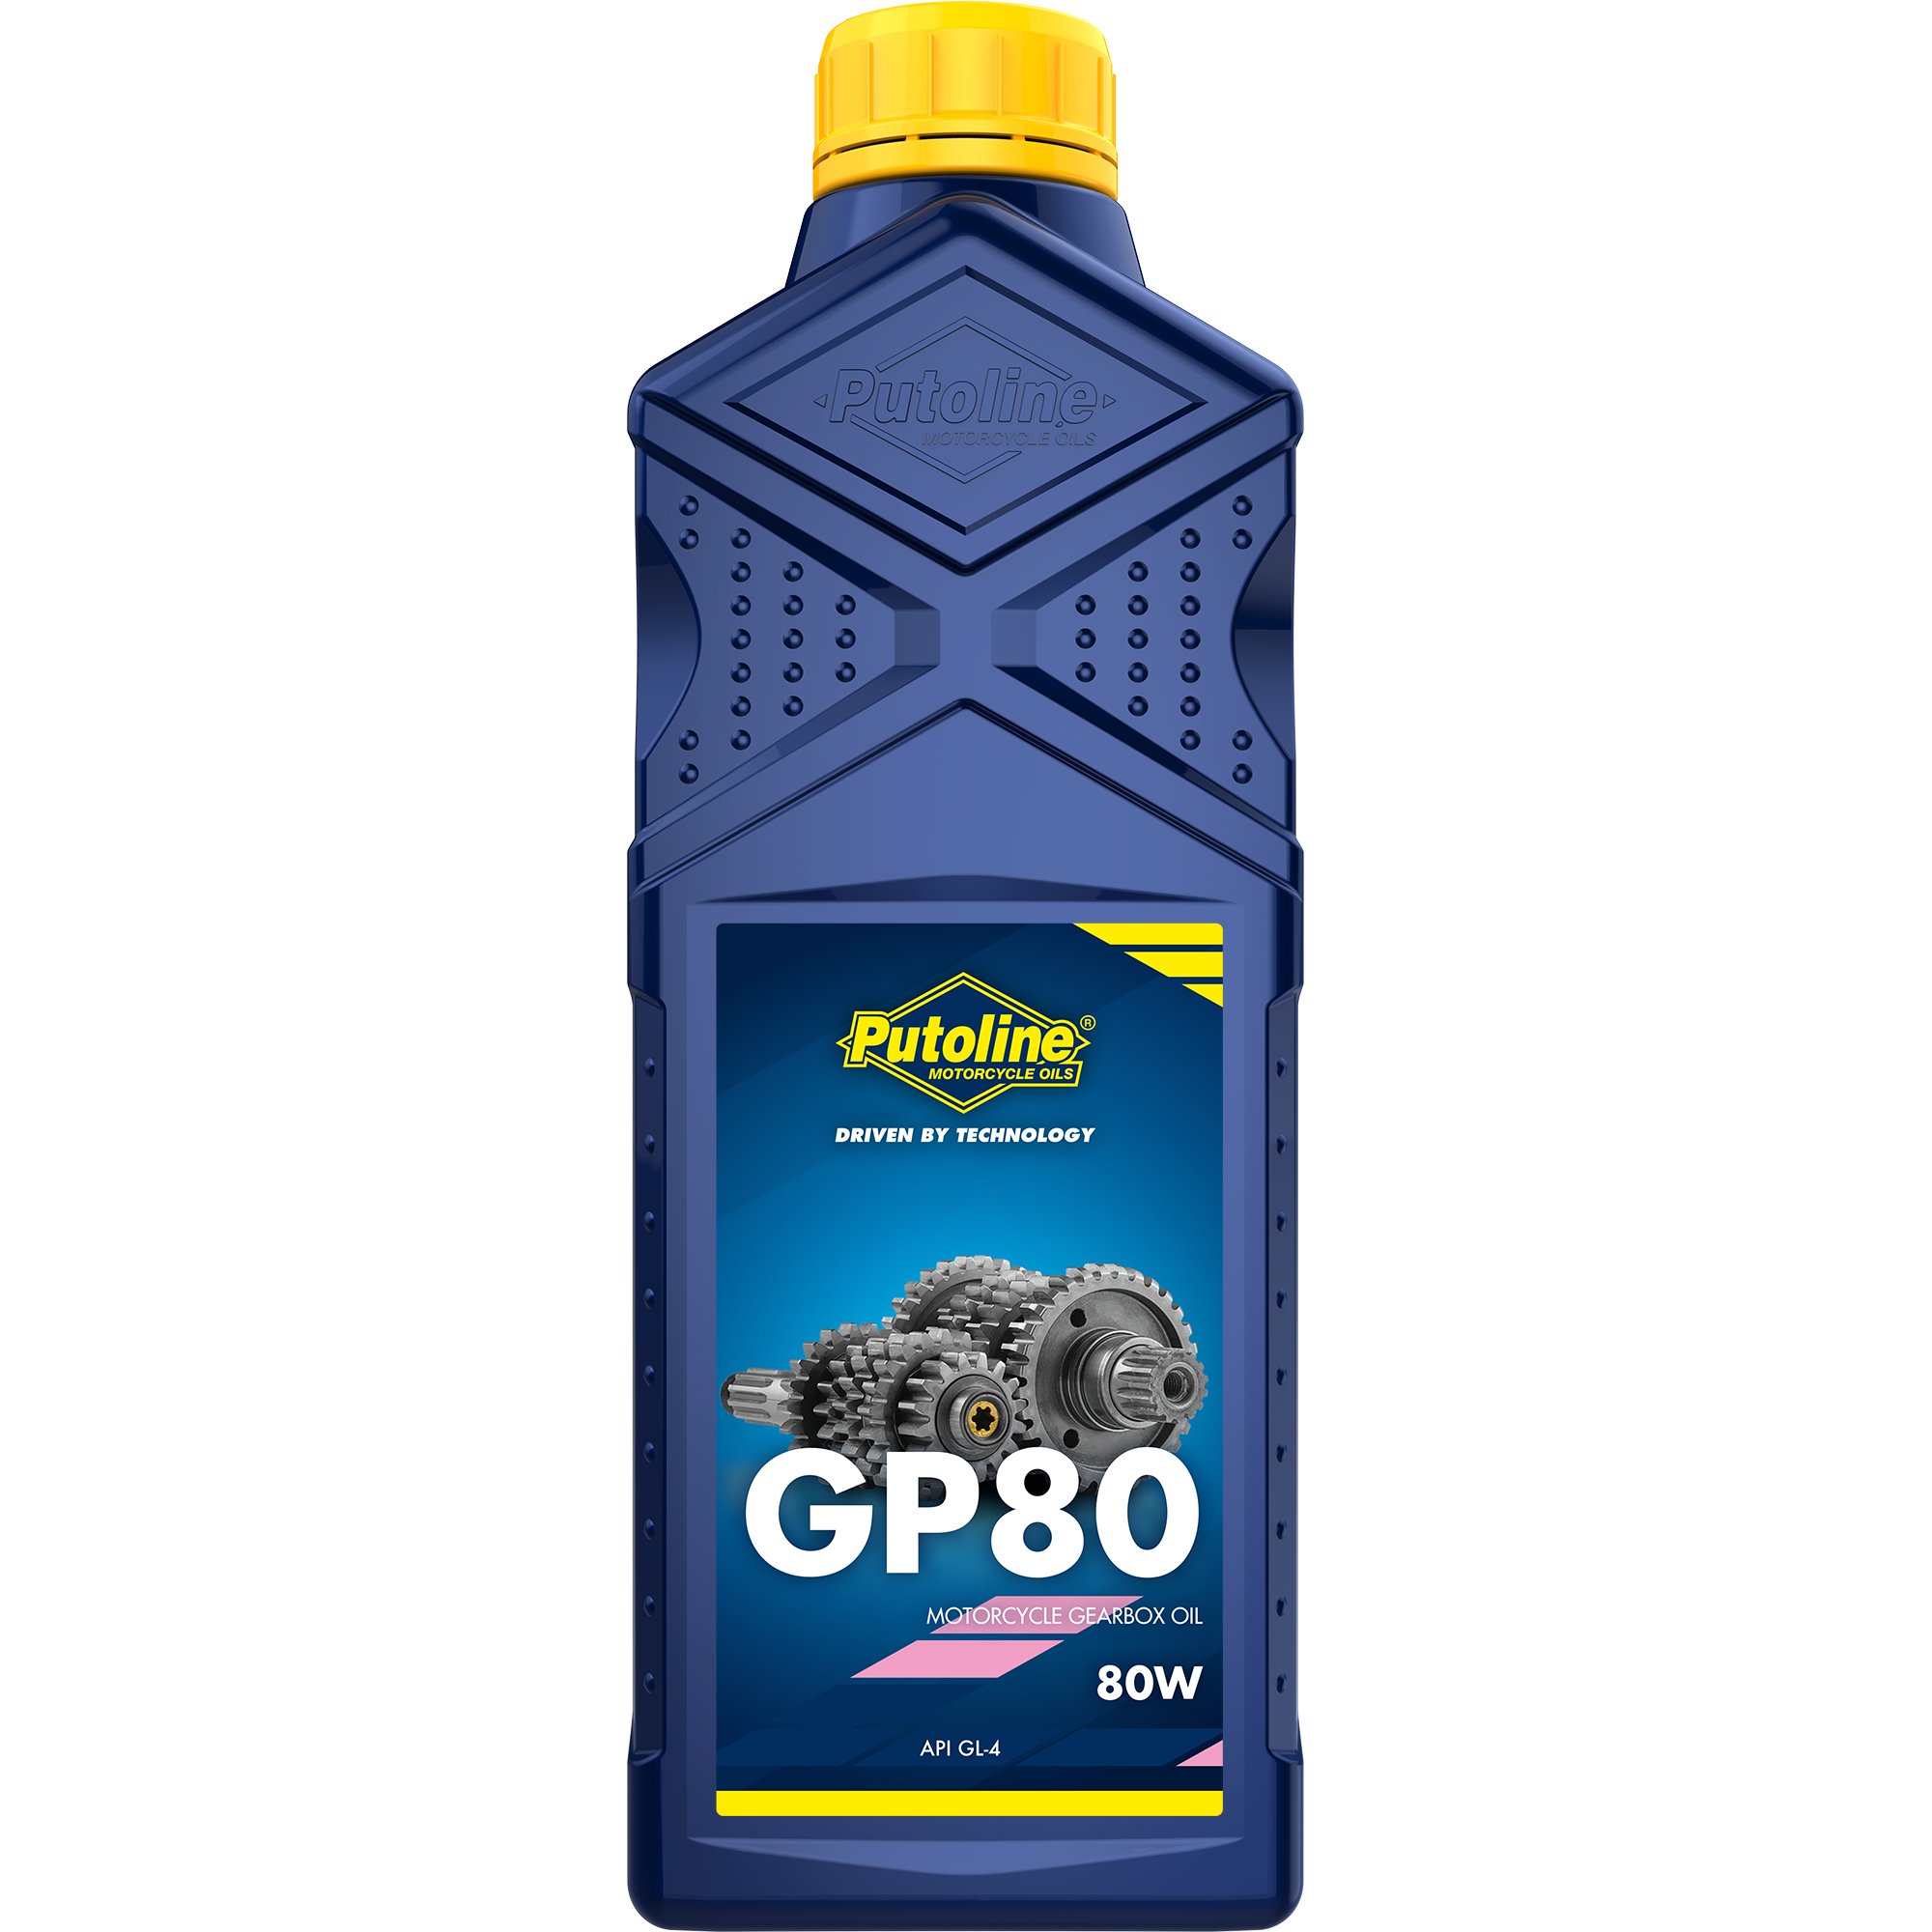 Putoline GP 80 80W, 1 lt